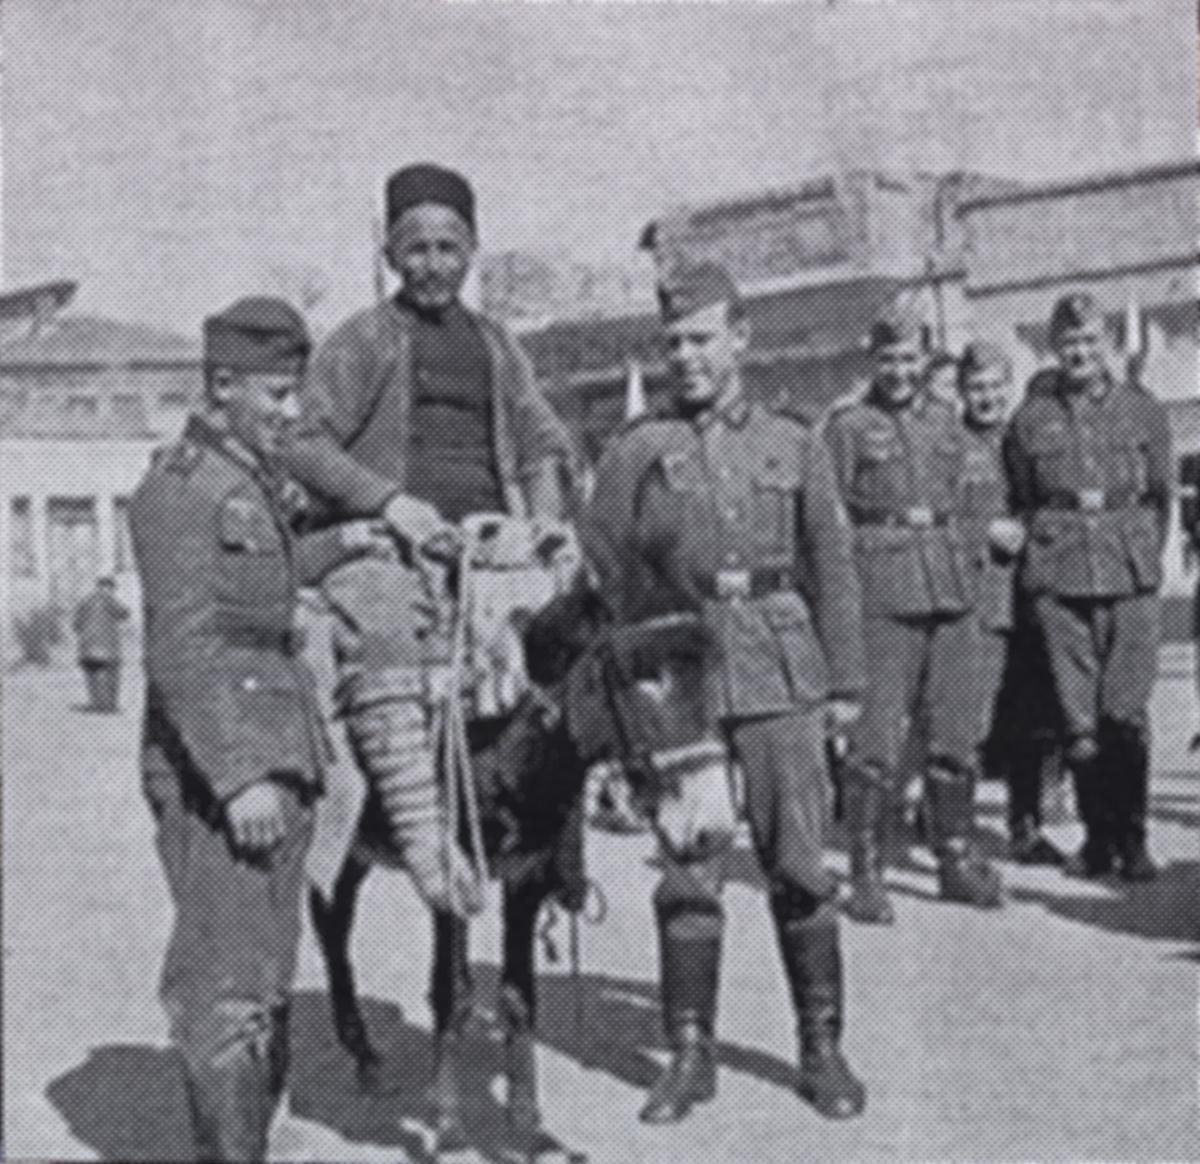 Wilhelm Werner on donkey with soldiers around